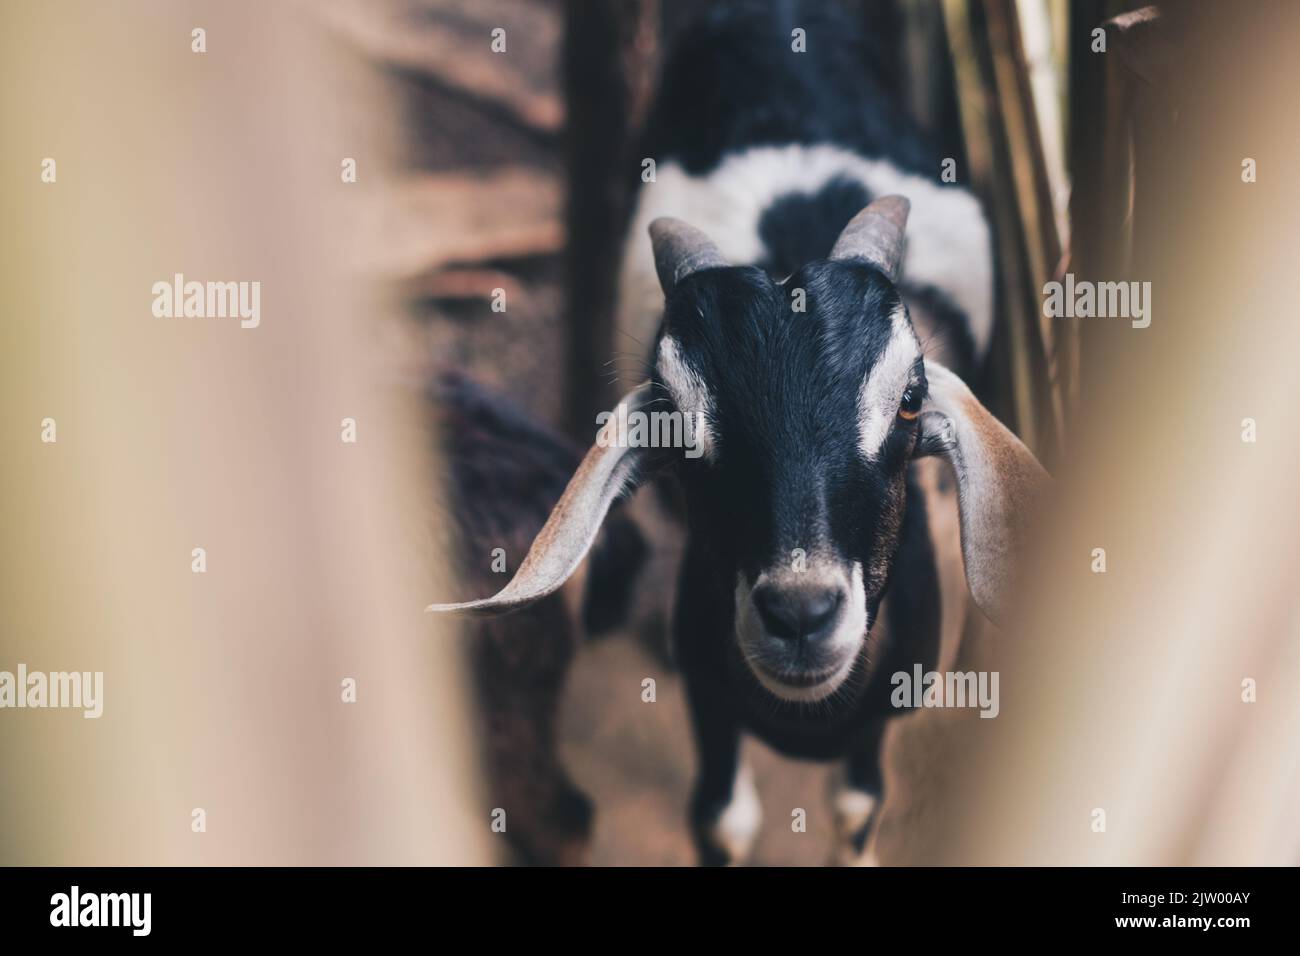 Tête de chèvre de gamme libre avec fourrure de couleur noire, brune et blanche regardant l'appareil photo. Mise au point sélective. Banque D'Images